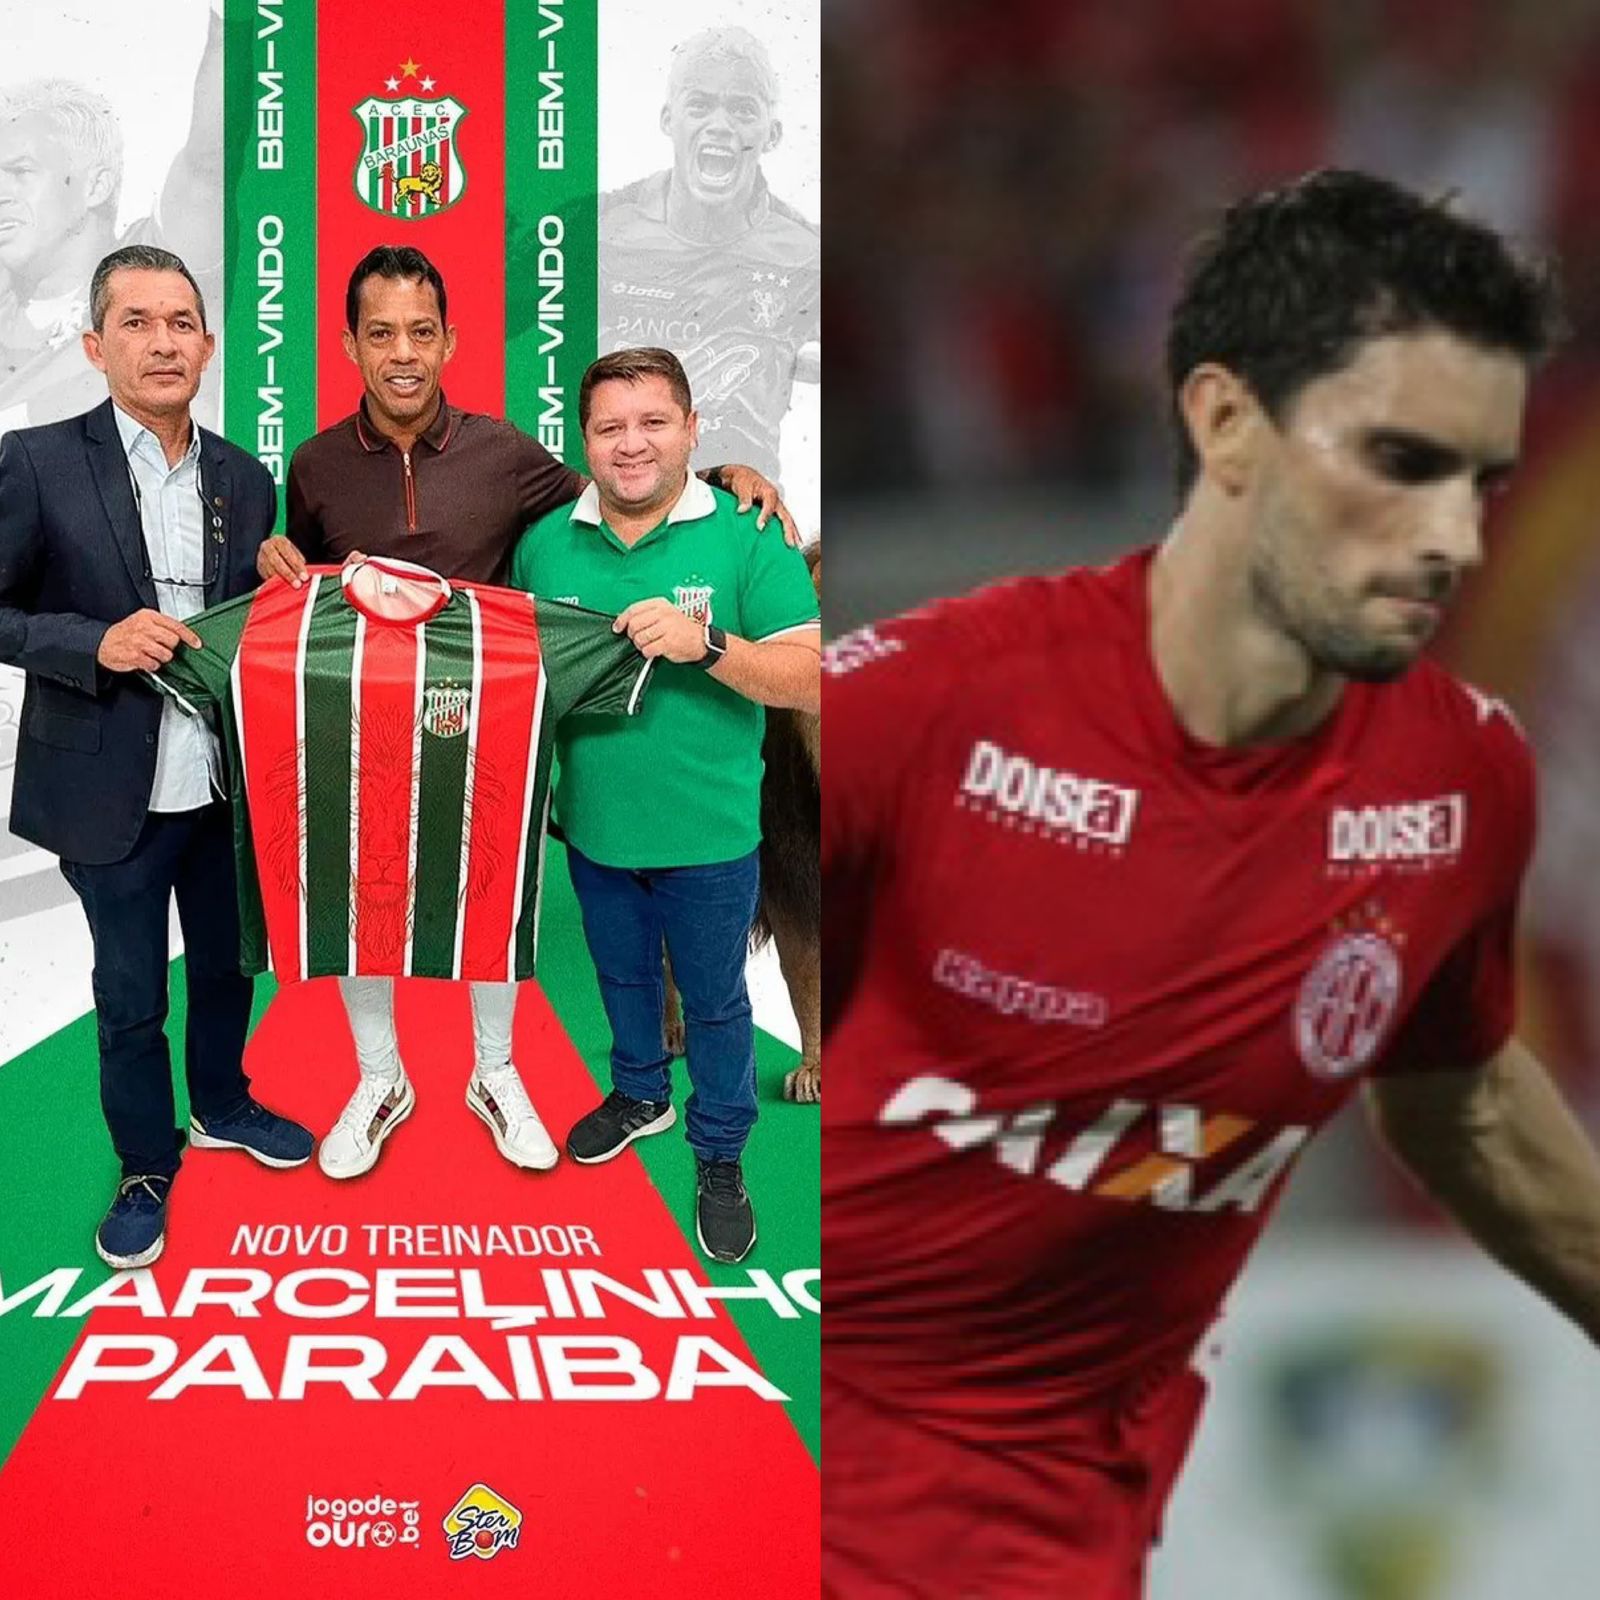 Baraúnas ousado: Marcelinho Paraíba é anunciado e Pimpão está na mira para disputar Campeonato Potiguar